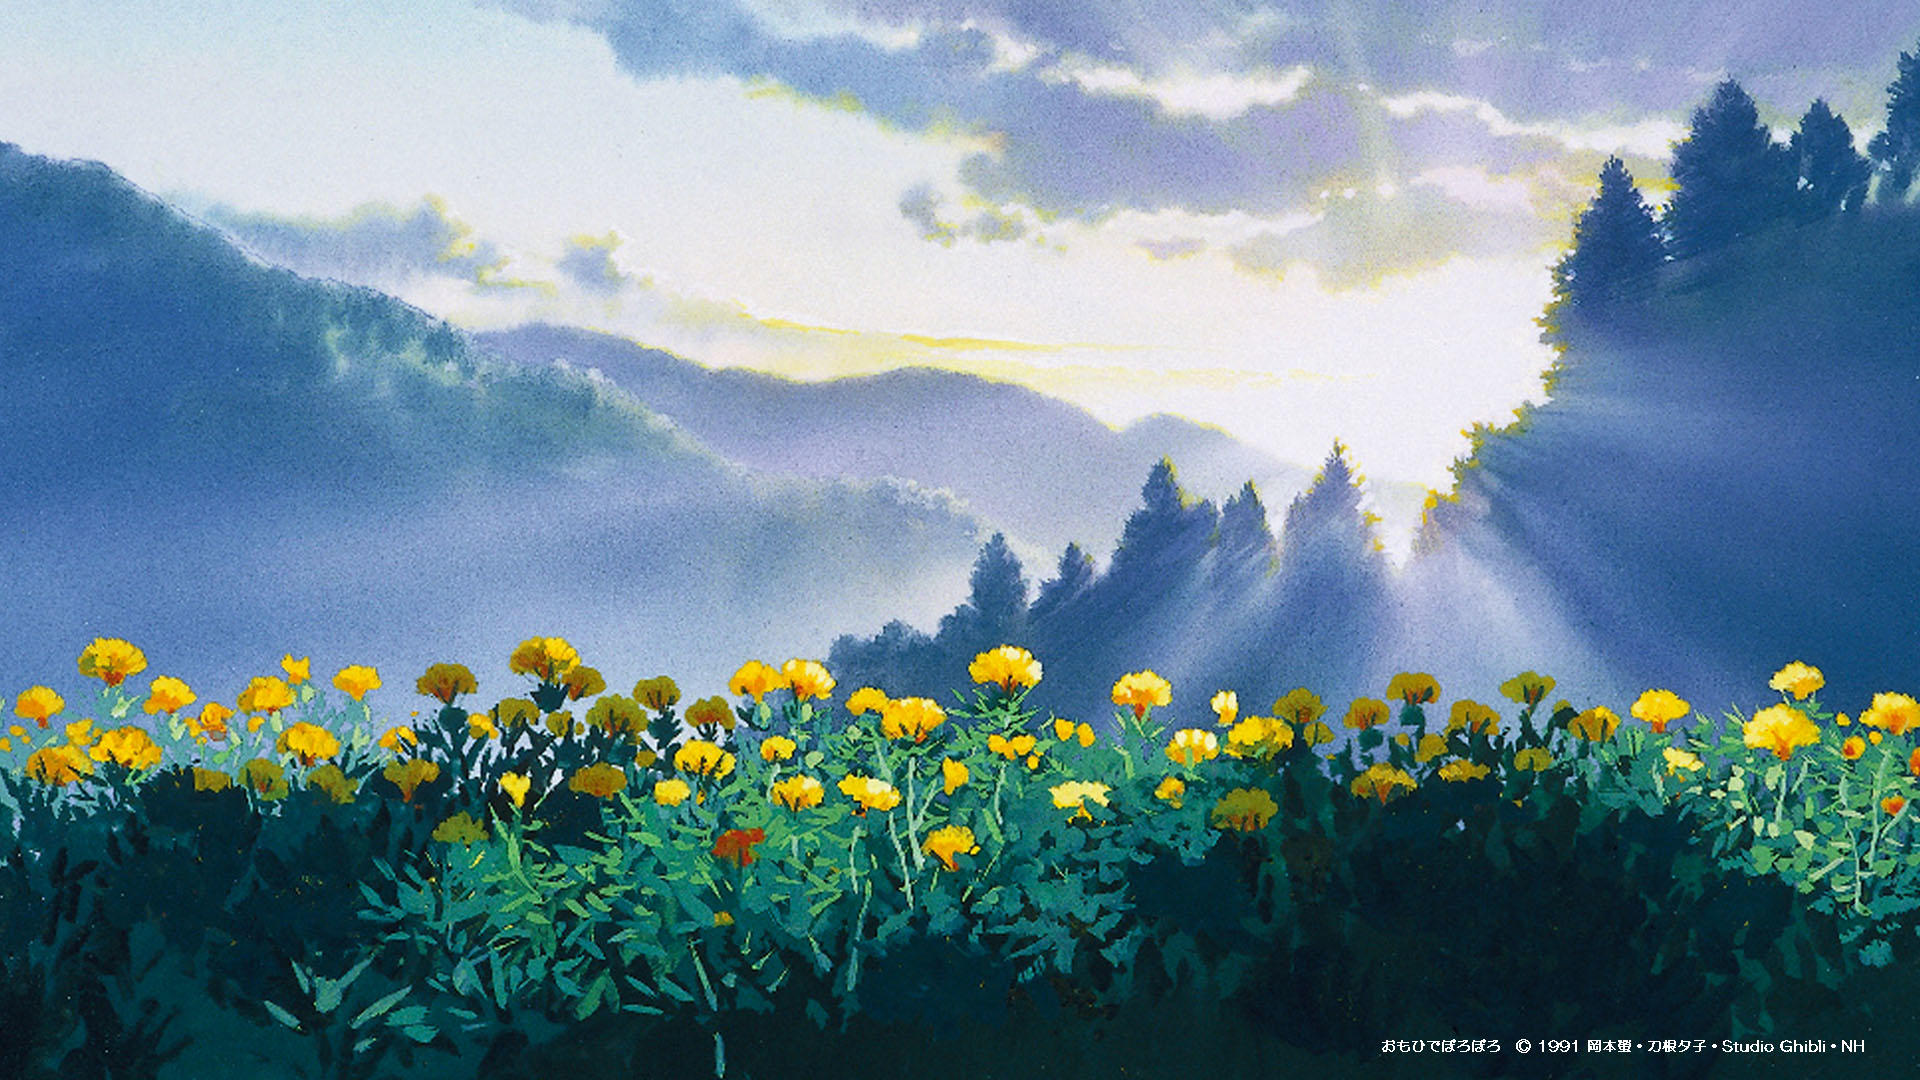 5 25更新 Web会議などで使える スタジオジブリ壁紙 スタジオジブリ Studio Ghibli